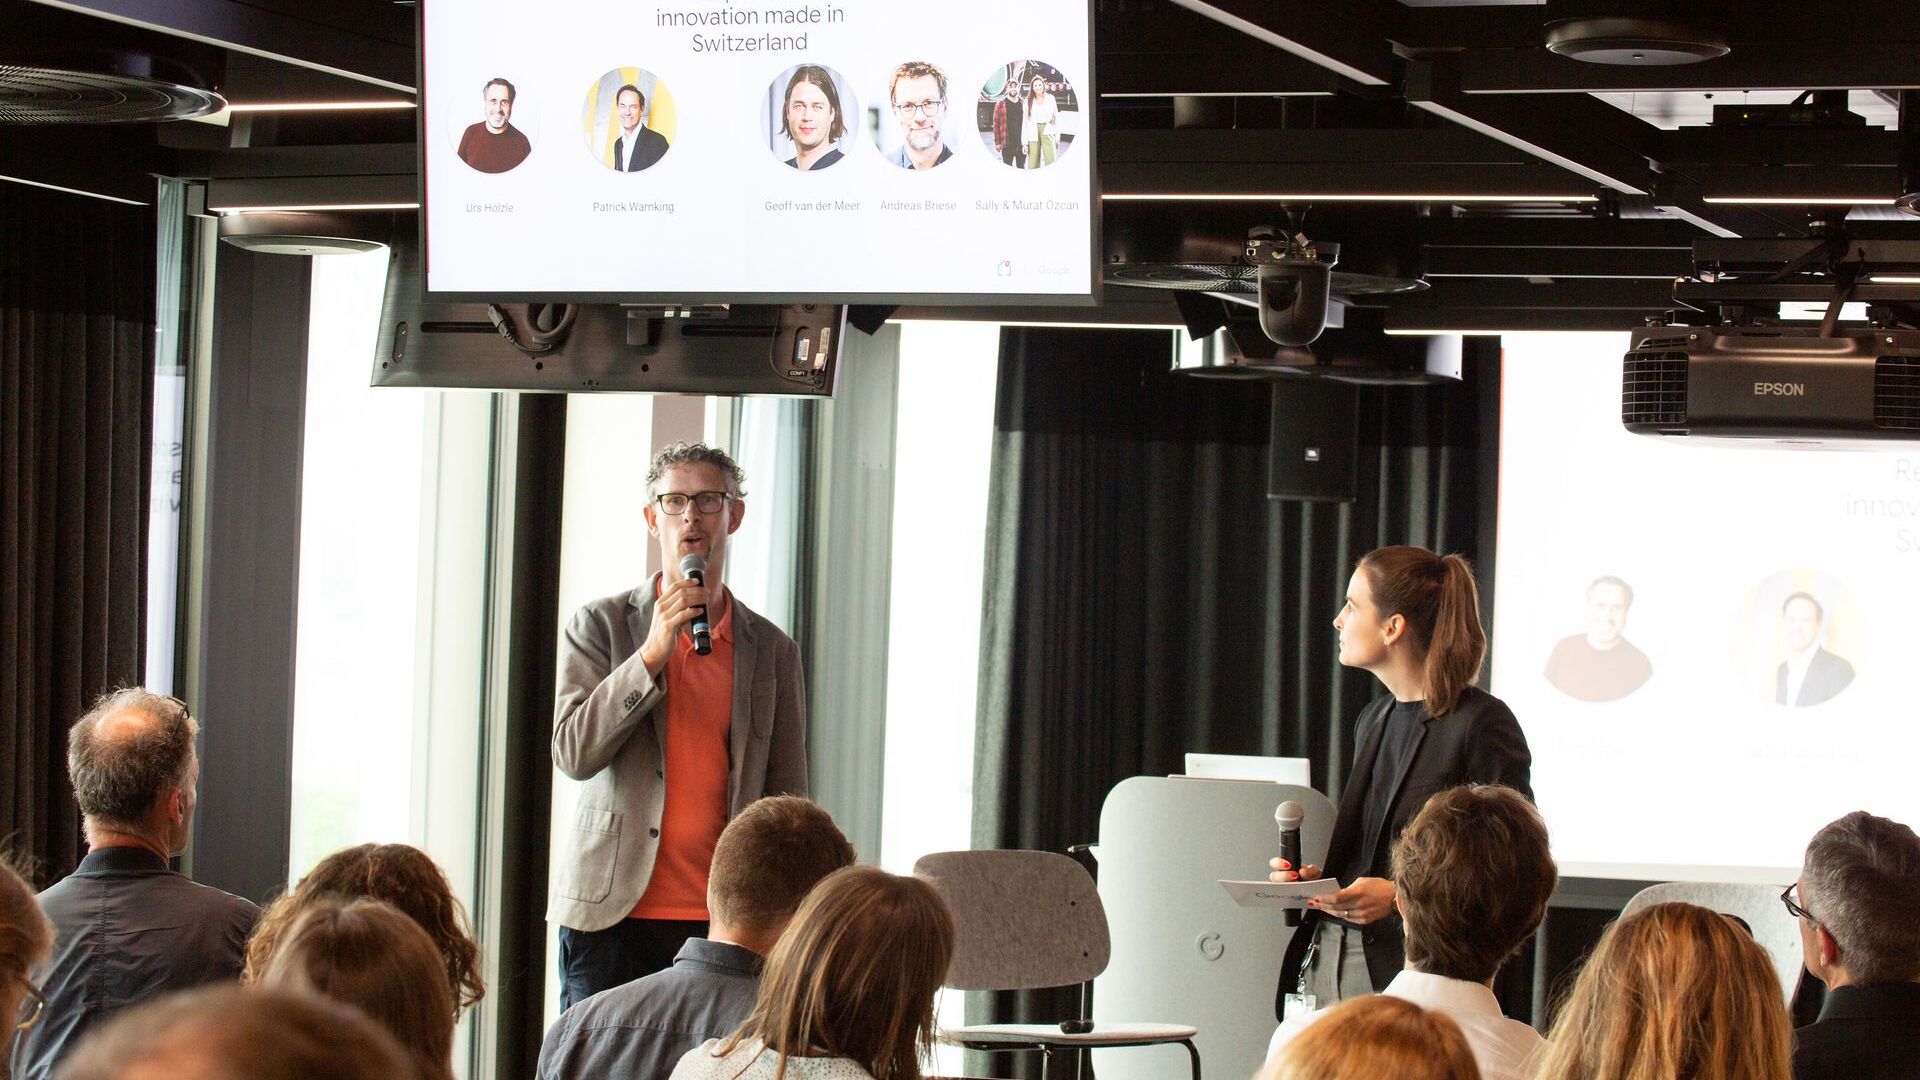 ساموئل لیزر و پیا د کارلی، تیم رسانه ای گوگل سوئیس، در افتتاحیه رسمی پردیس جدید Google Europaallee در زوریخ در 27 ژوئن 2022 شرکت کردند.